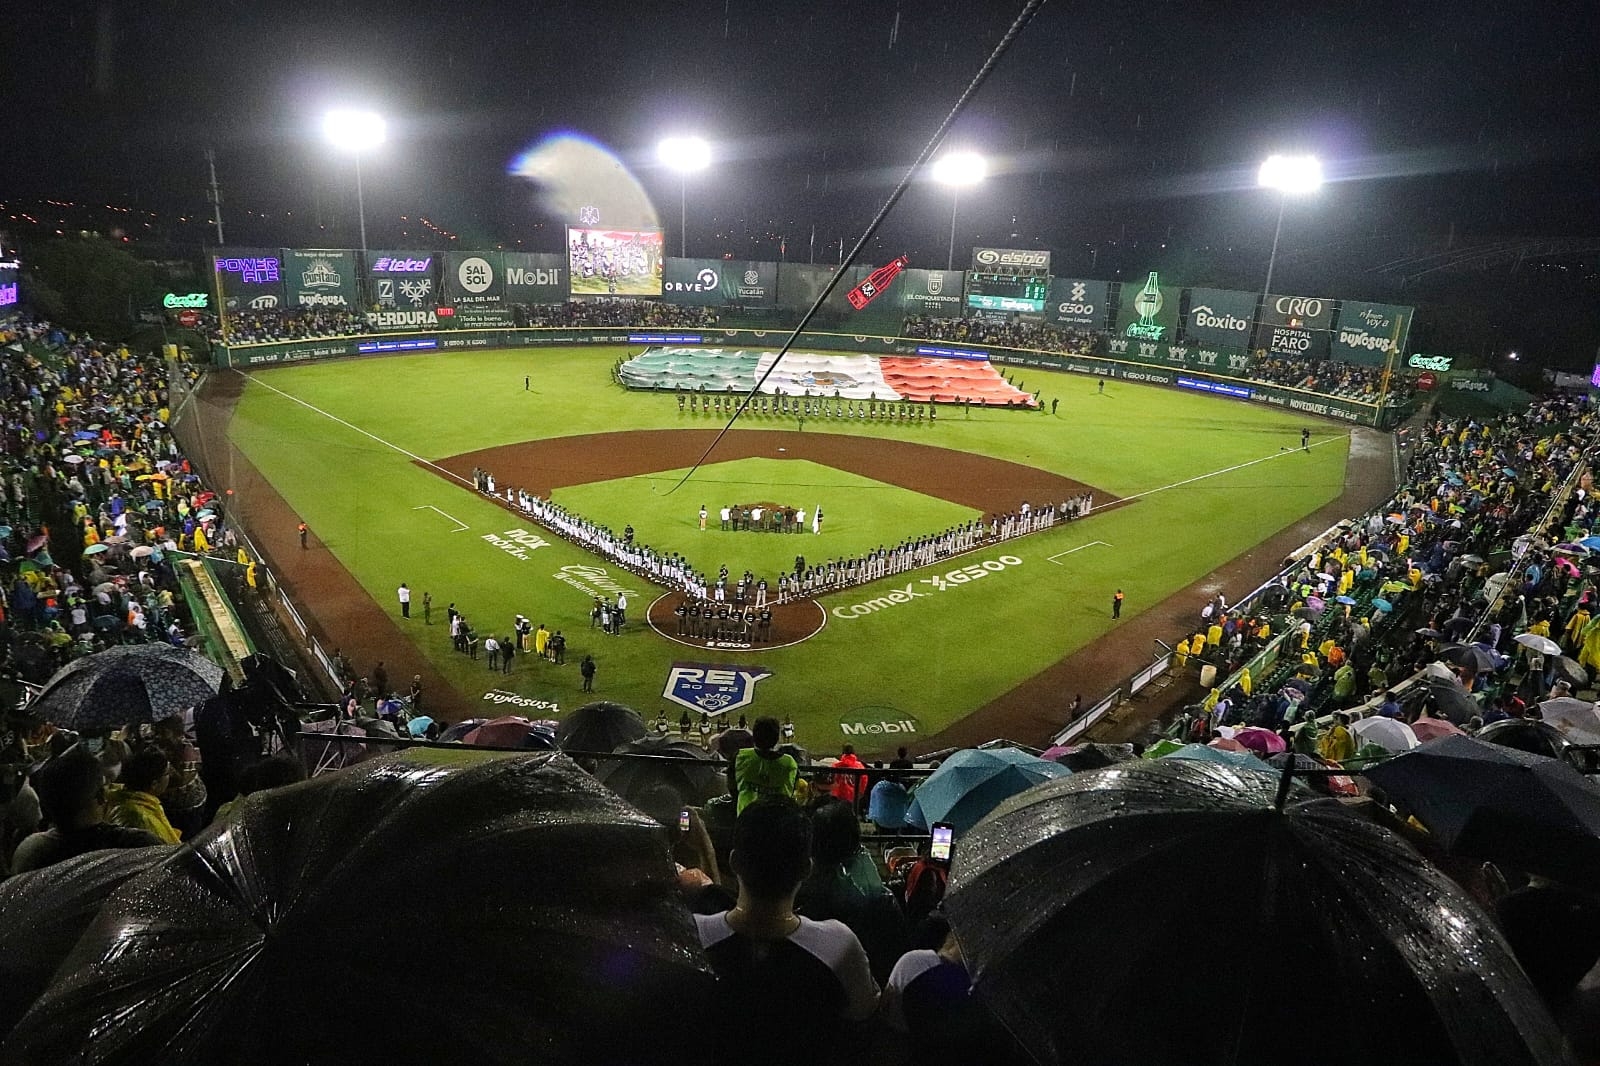 Leones vs Sultanes: Sigue minuto a minuto el partido desde el Estadio Kukulcán en Mérida